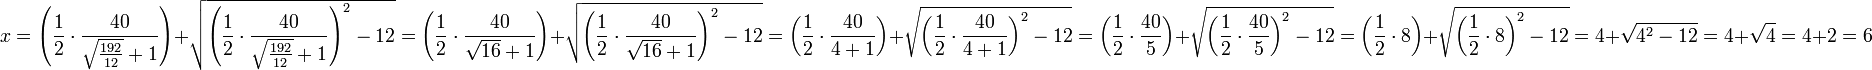 x=\left(\frac{1}{2}\sdot\frac{40}{\sqrt{\frac{192}{12}}+1}\right)+\sqrt{\left(\frac{1}{2}\sdot\frac{40}{\sqrt{\frac{192}{12}}+1}\right)^2-12}=\left(\frac{1}{2}\sdot\frac{40}{\sqrt{16}+1}\right)+\sqrt{\left(\frac{1}{2}\sdot\frac{40}{\sqrt{16}+1}\right)^2-12}=\left(\frac{1}{2}\sdot\frac{40}{4+1}\right)+\sqrt{\left(\frac{1}{2}\sdot\frac{40}{4+1}\right)^2-12}=\left(\frac{1}{2}\sdot\frac{40}{5}\right)+\sqrt{\left(\frac{1}{2}\sdot\frac{40}{5}\right)^2-12}=\left(\frac{1}{2}\sdot8\right)+\sqrt{\left(\frac{1}{2}\sdot8\right)^2-12}=4+\sqrt{4^2-12}=4+\sqrt{4}=4+2=6